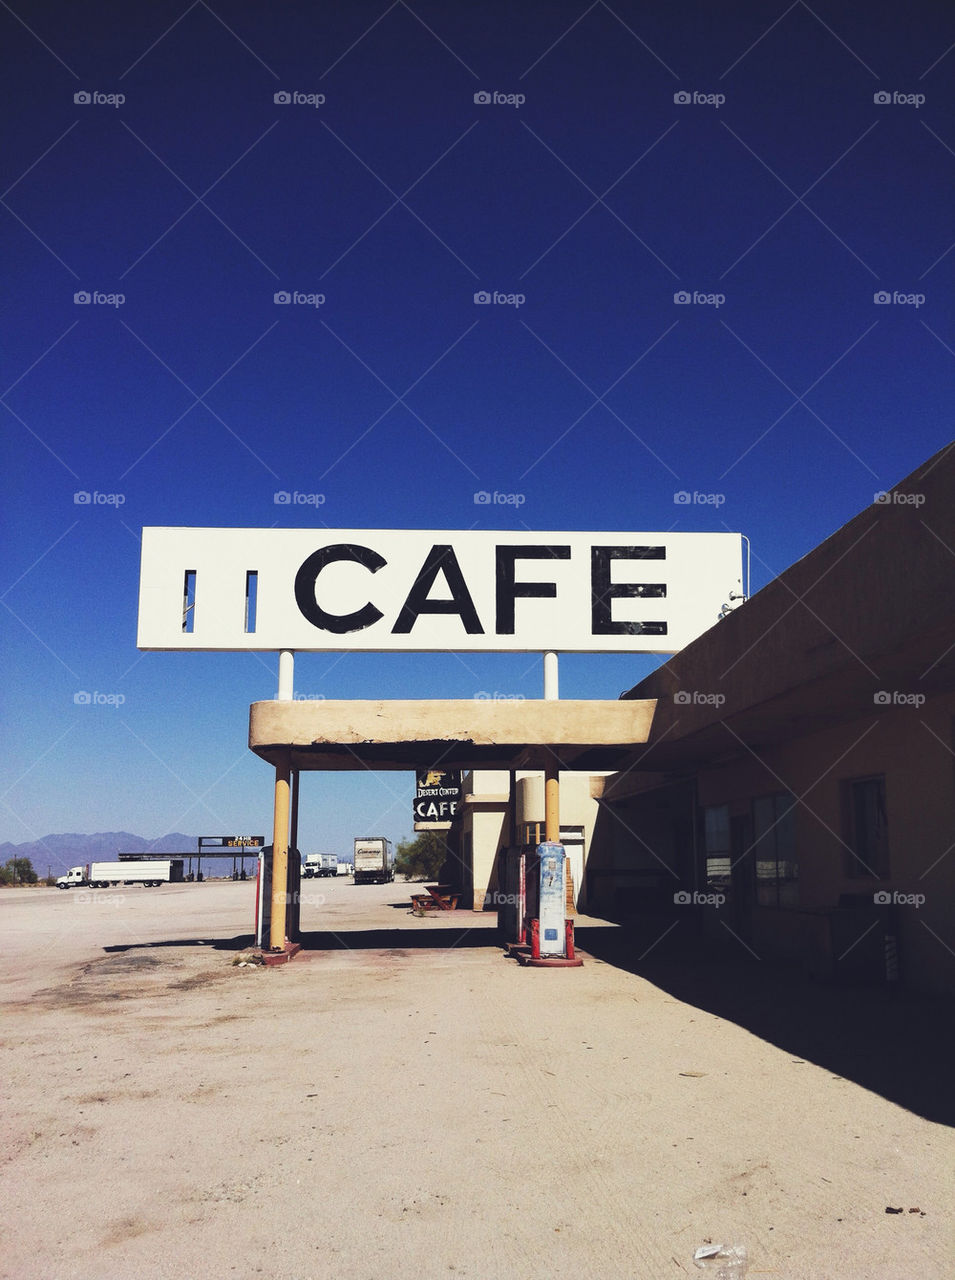 Desert cafe